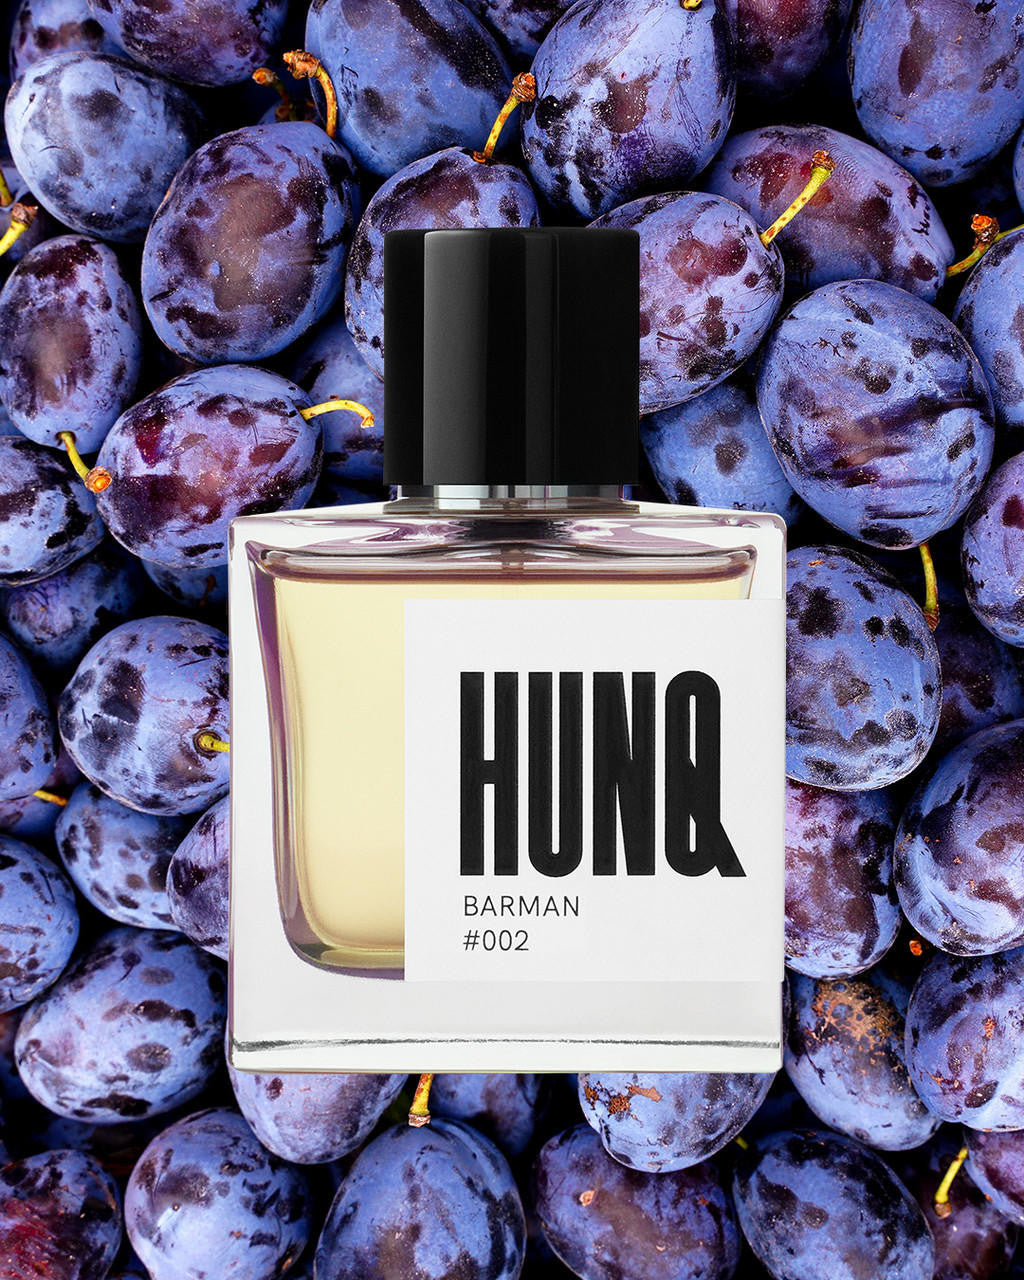  HUNQ #002 Barman Eau de Parfum 